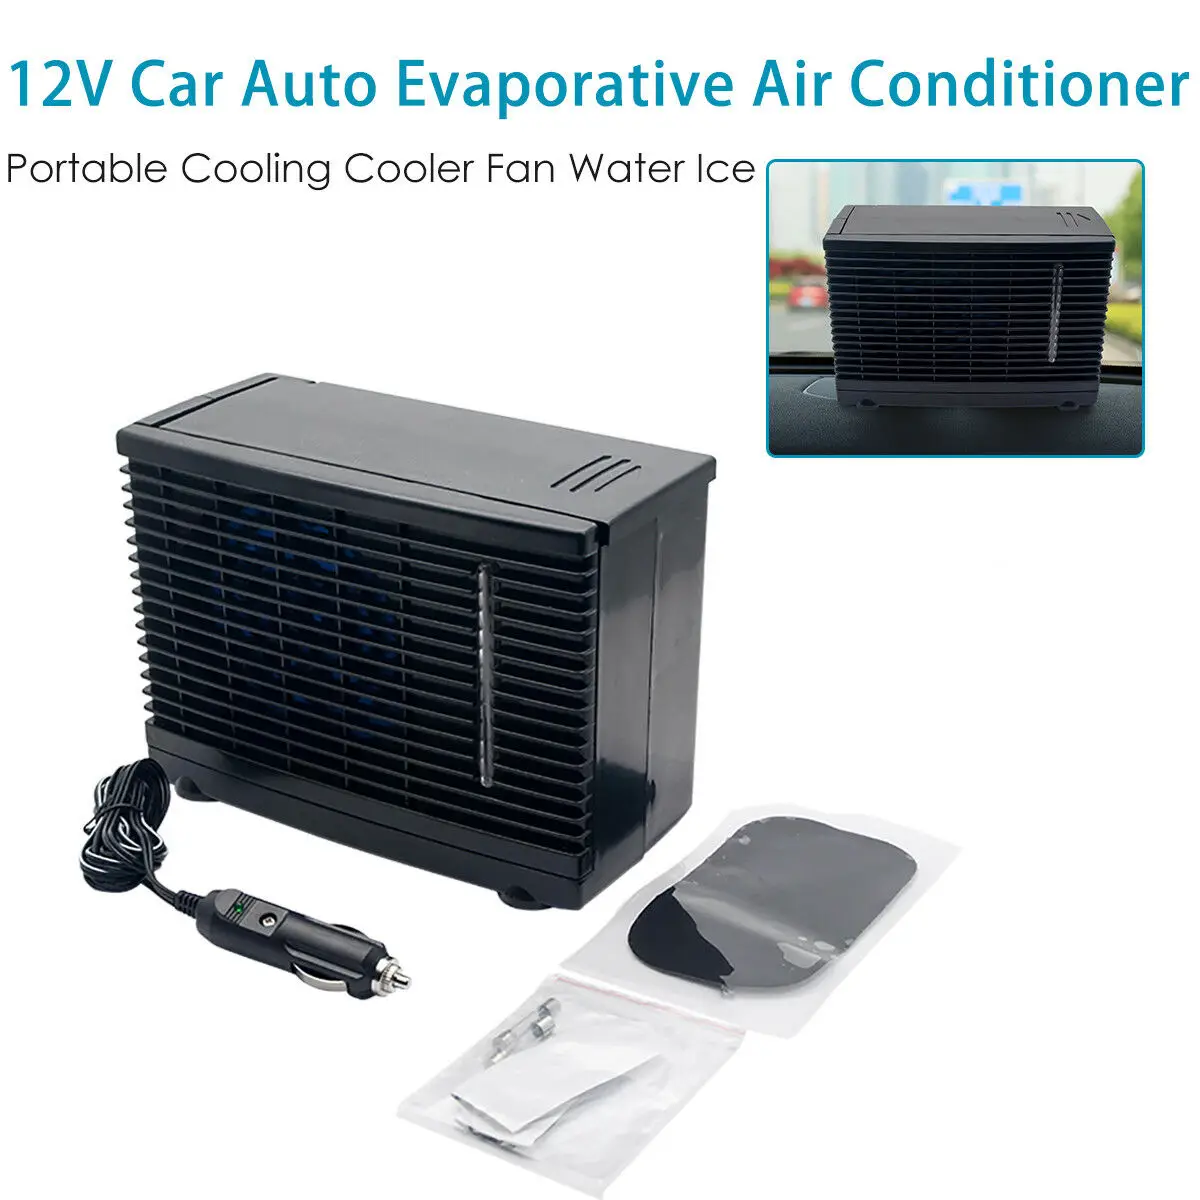 12 В Воздушный портативный кондиционер для дома и автомобиля охлаждающий вентилятор для воды и льда